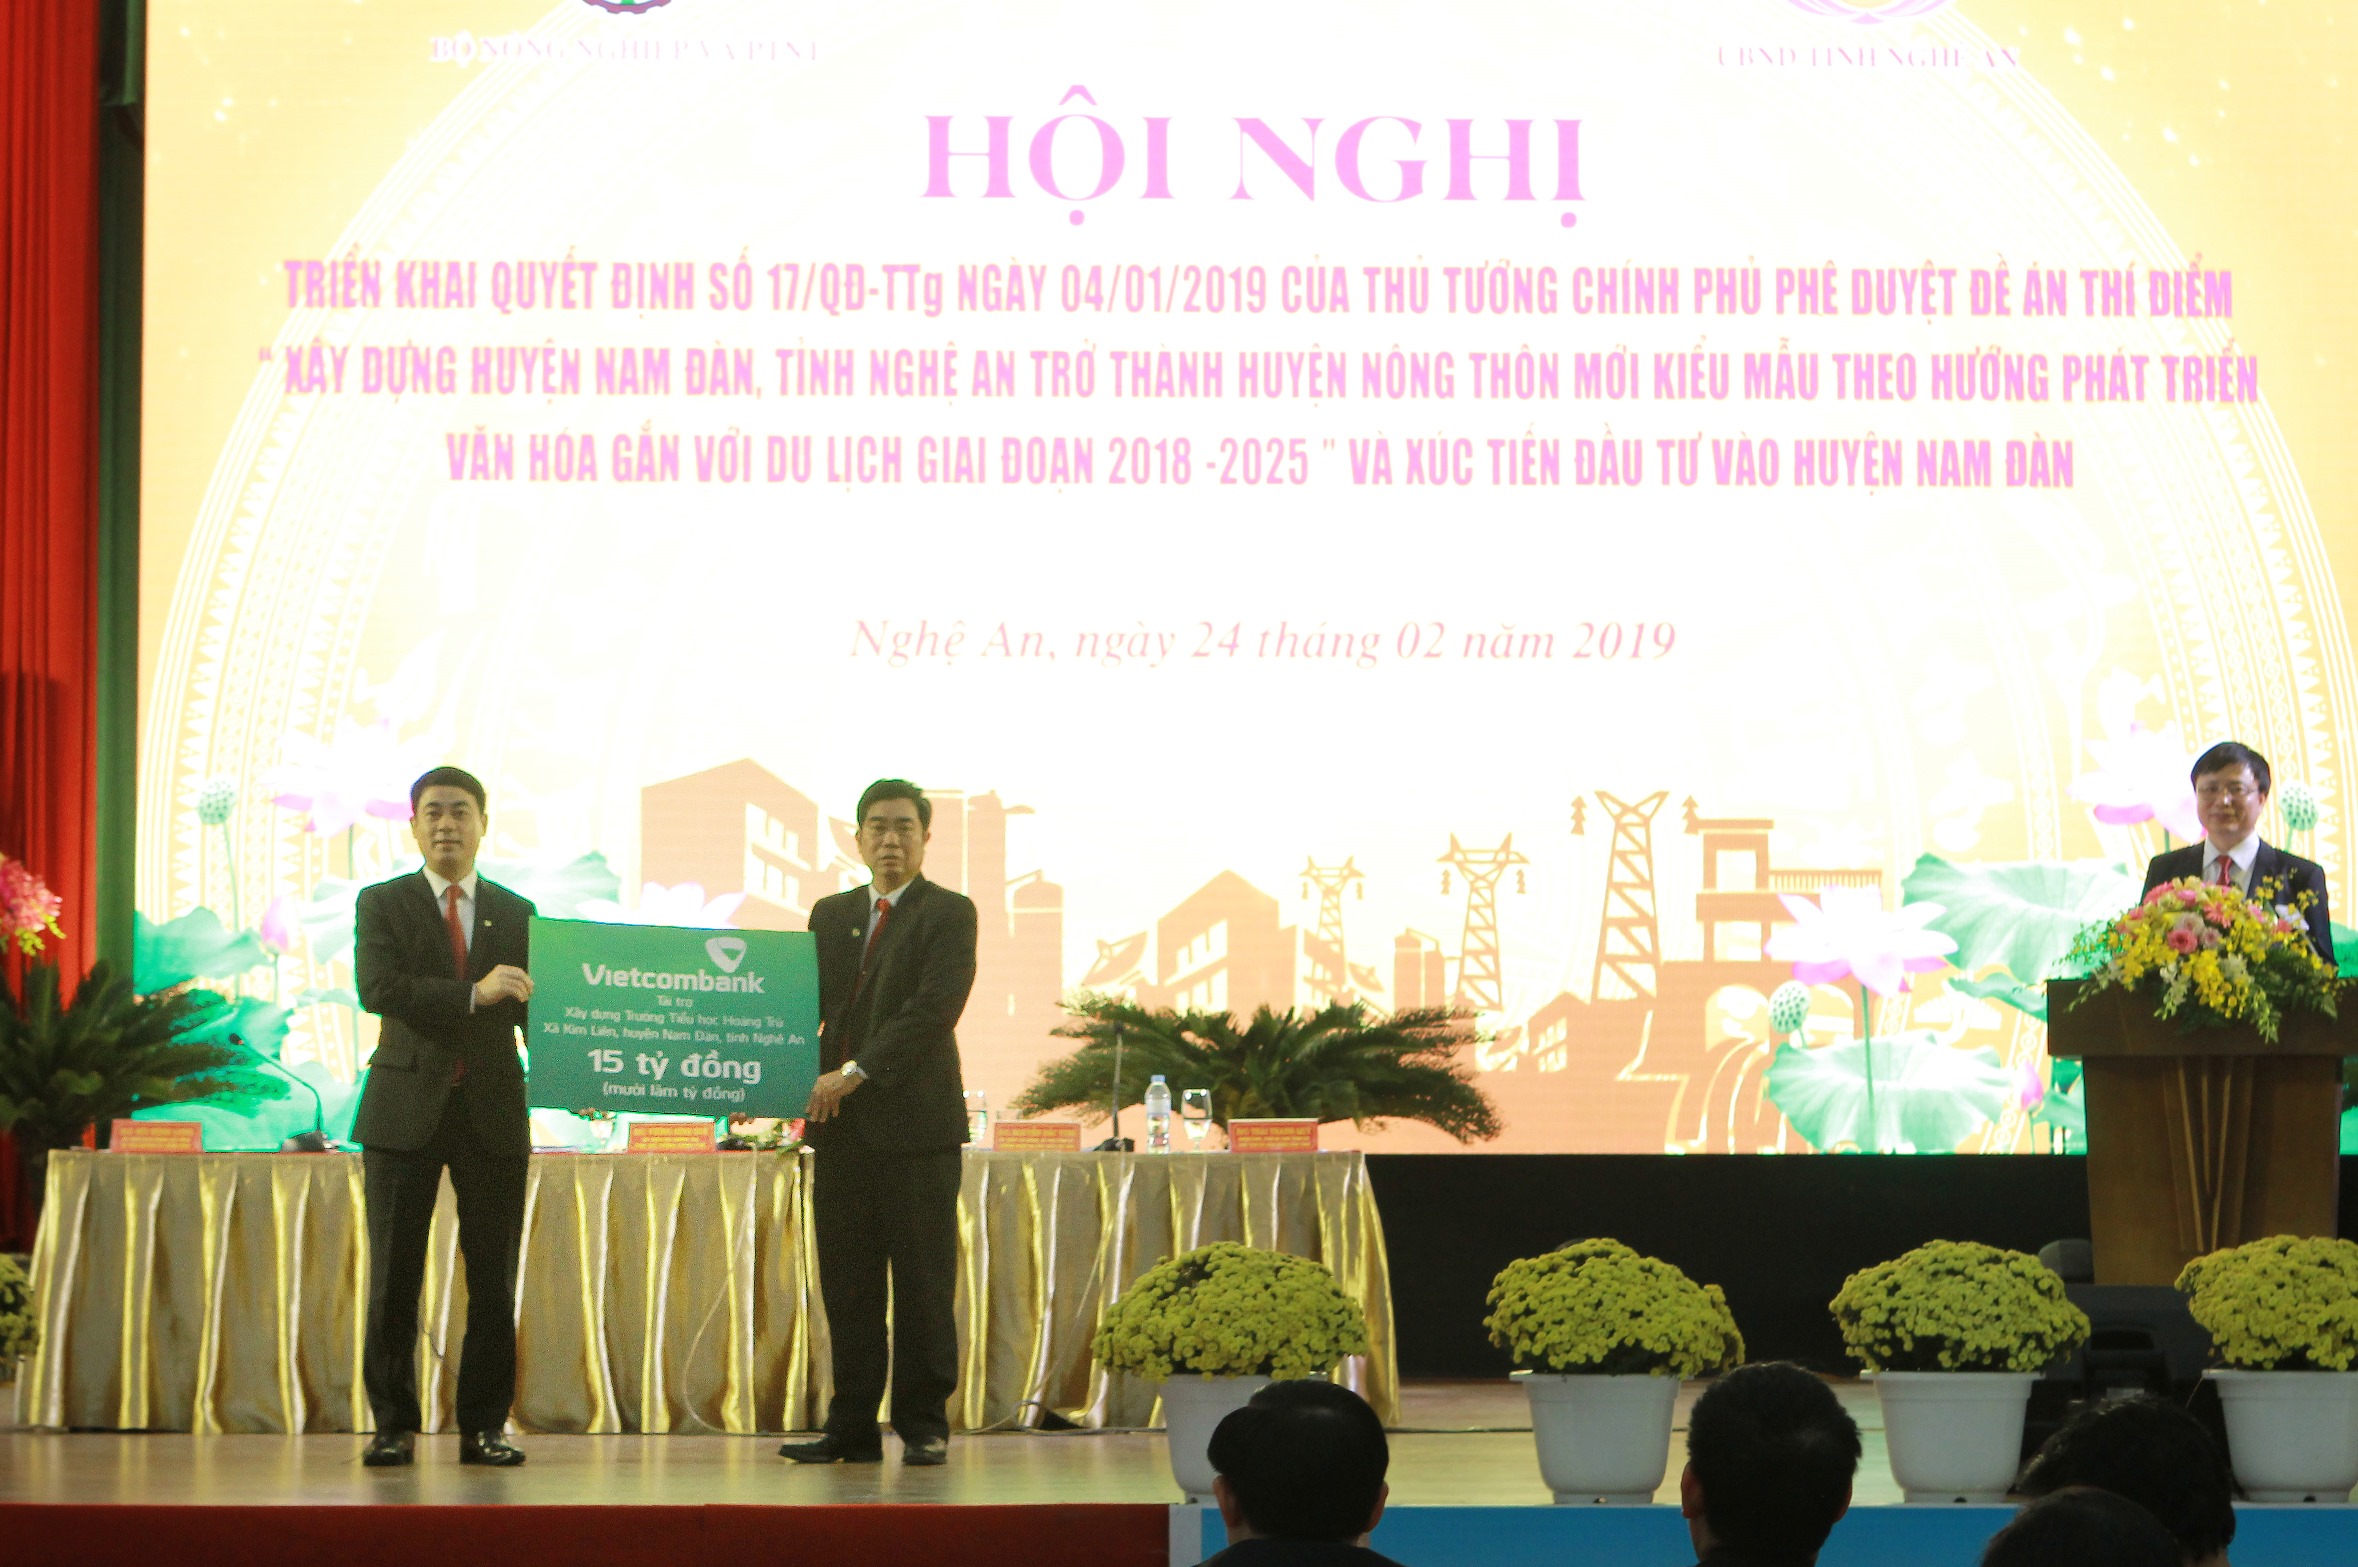 Kinh doanh - Vietcombank tài trợ 15 tỷ đồng xây dựng trường học tại huyện Nam Đàn, tỉnh Nghệ An (Hình 3).